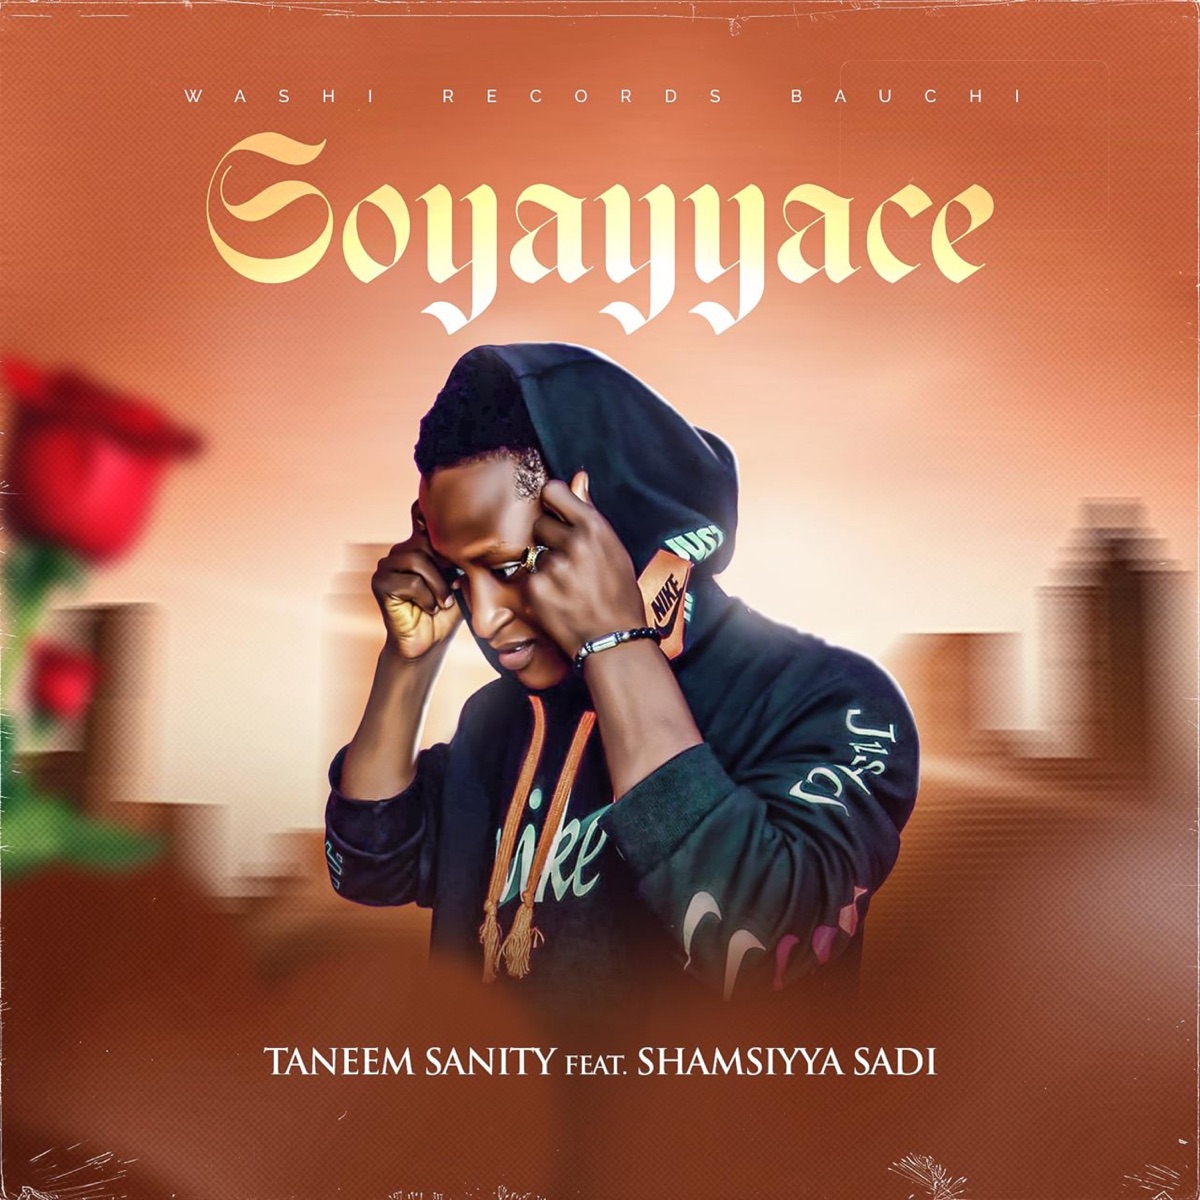 Soyayya Ce (feat. Shamsiyya Sidi) - Single - Album by Taneem Sanity - Apple Music